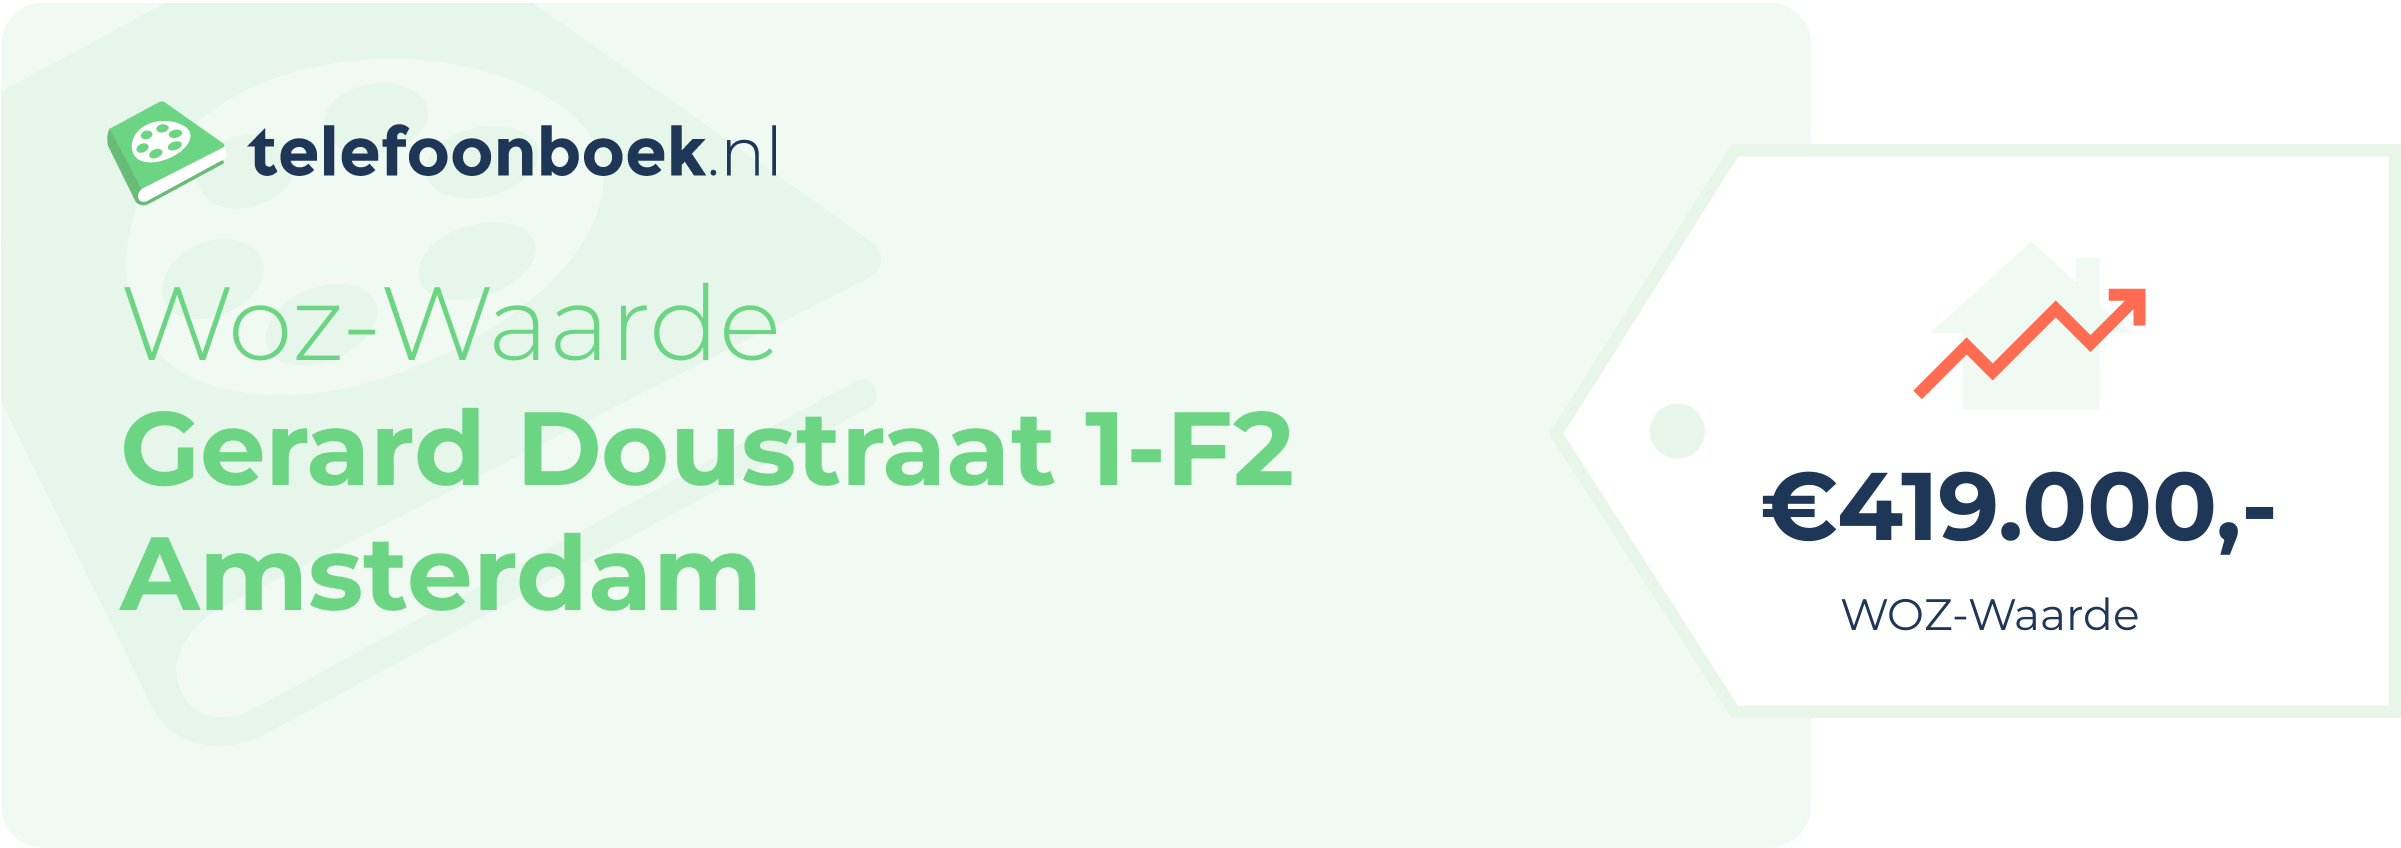 WOZ-waarde Gerard Doustraat 1-F2 Amsterdam